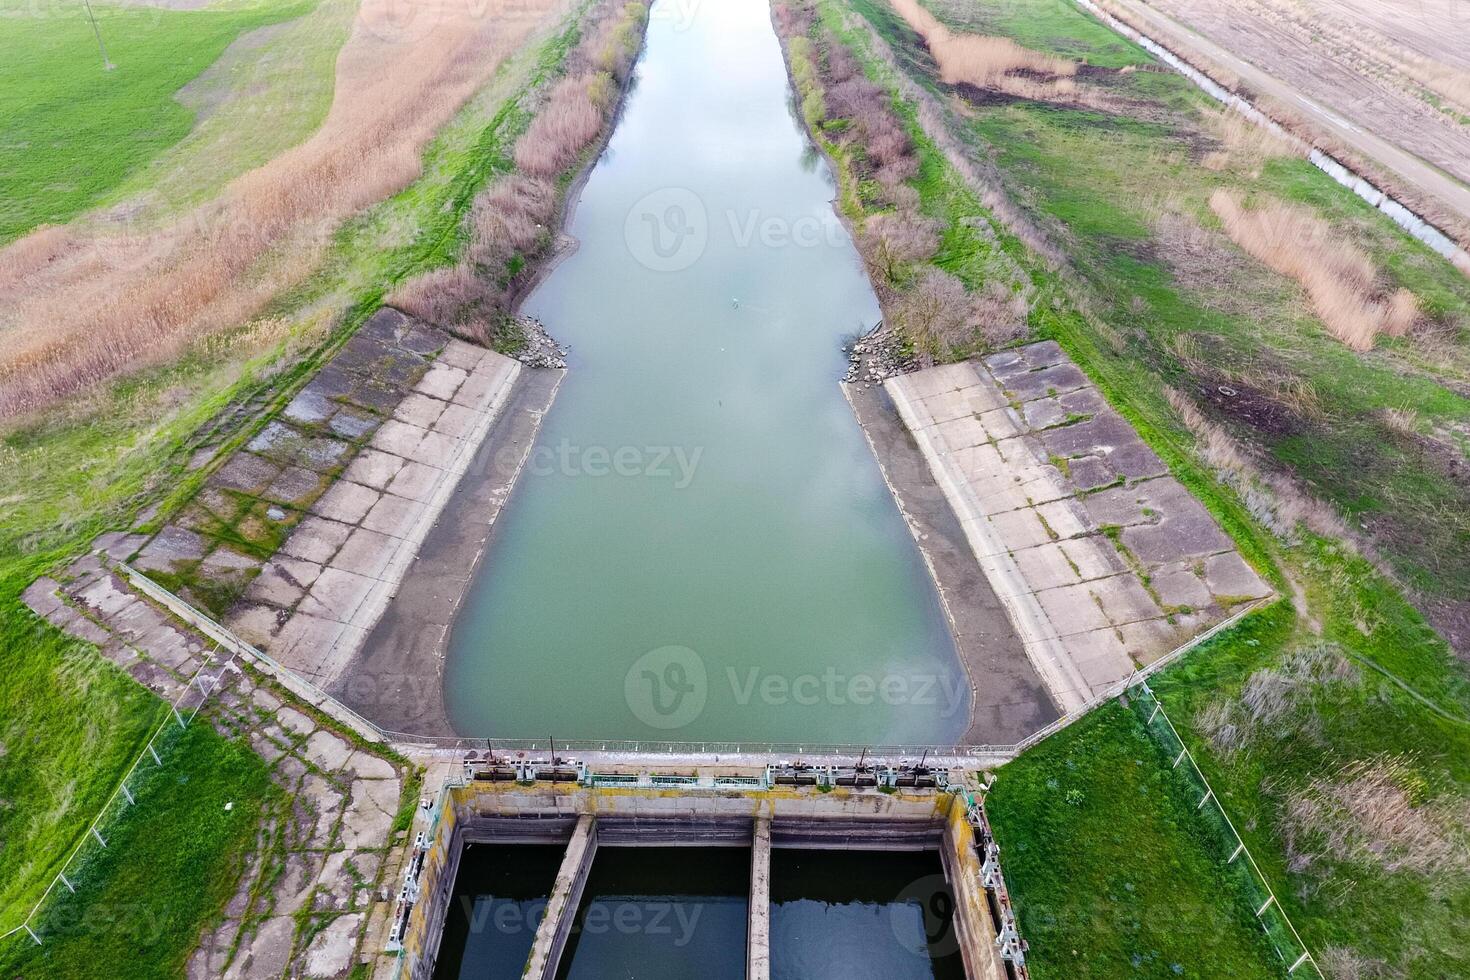 vatten pumpning station av bevattning systemet av ris fält. se foto